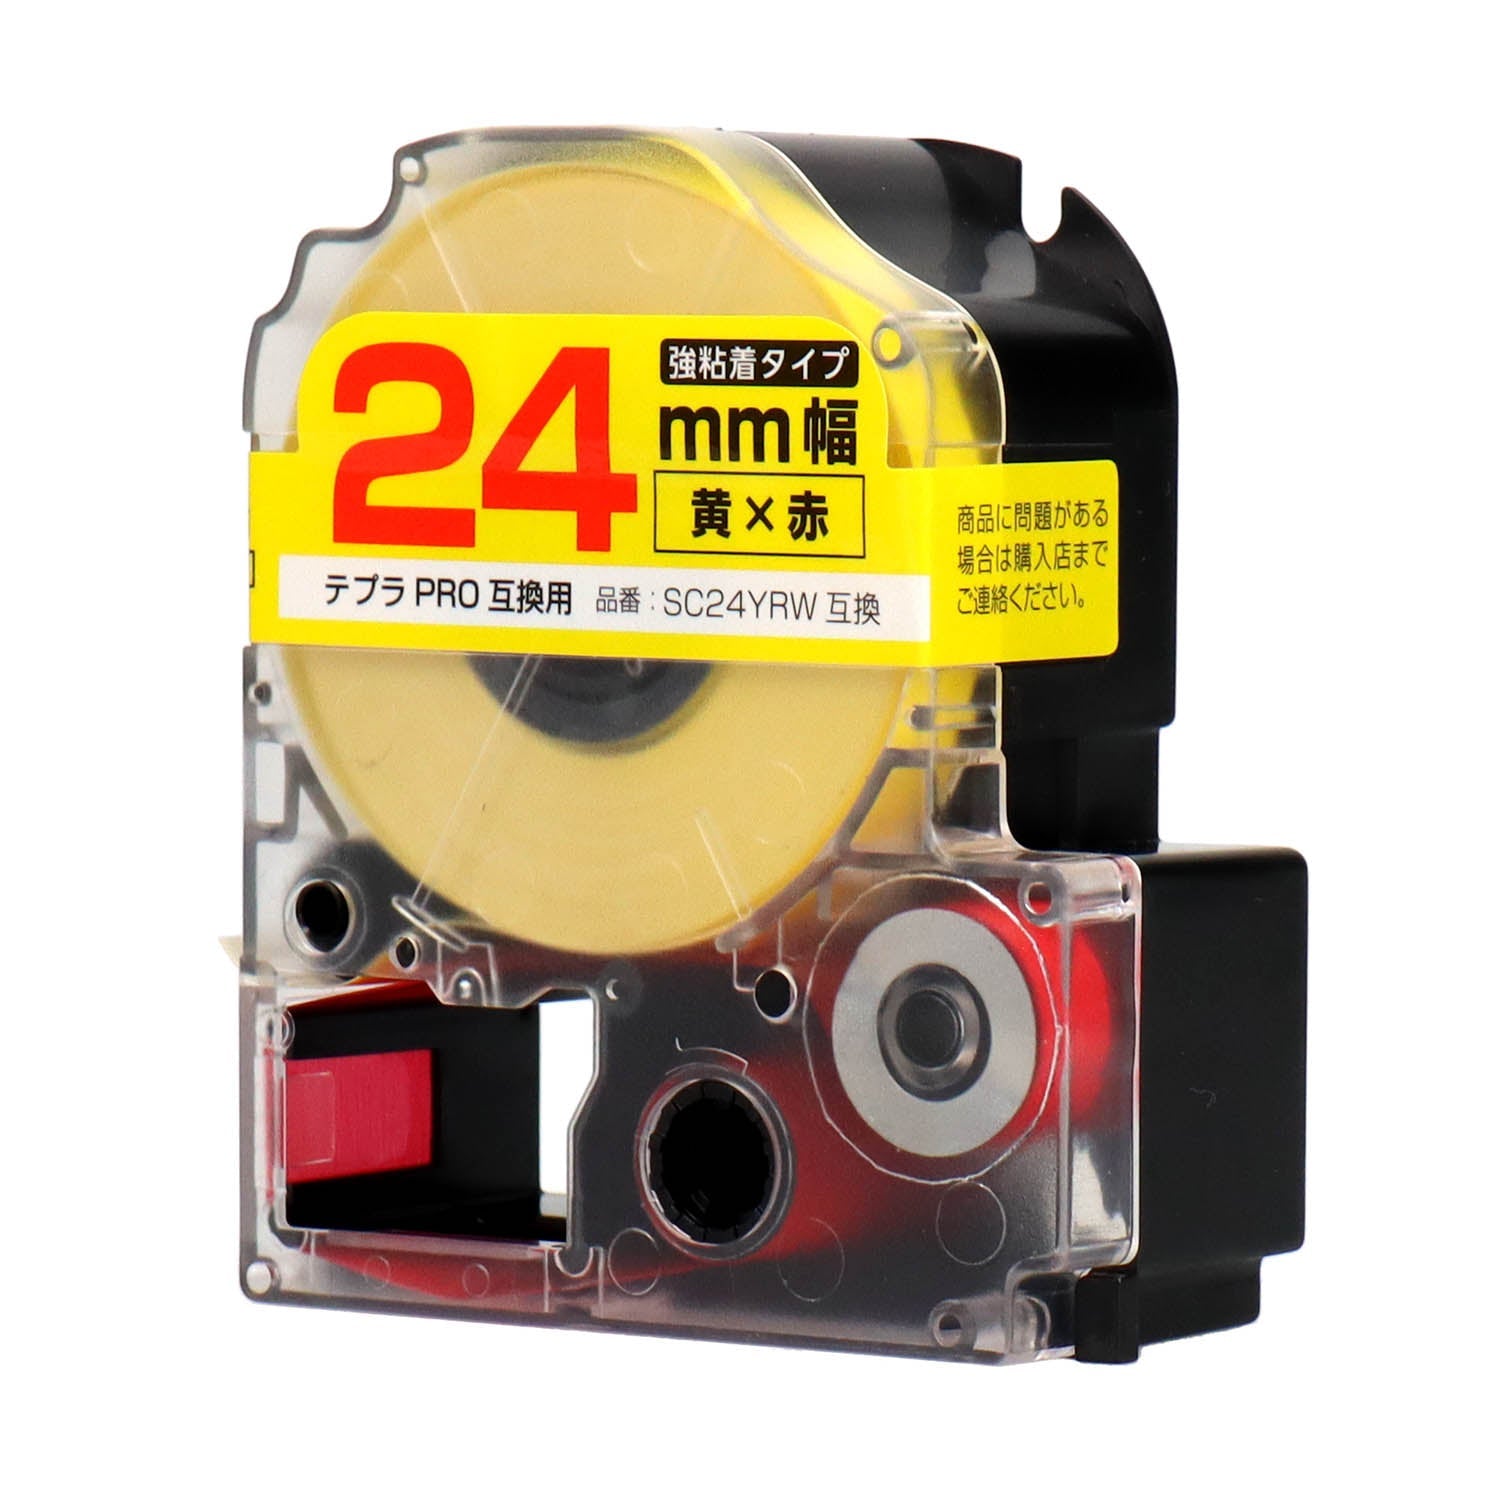 テプラPRO用互換テープカートリッジ 黄×赤文字 24mm